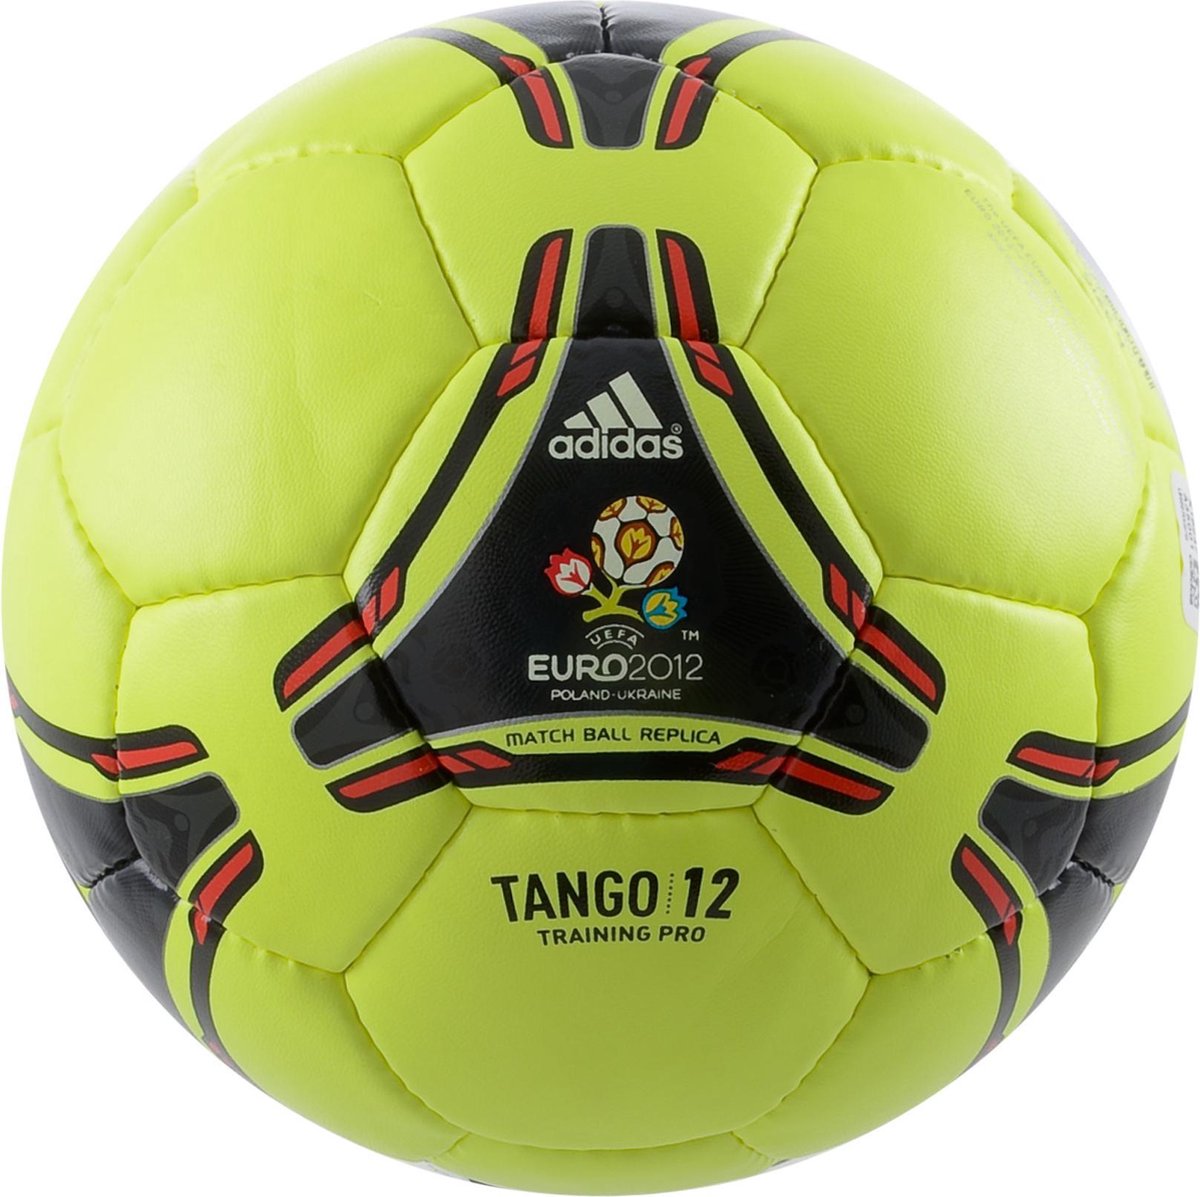 Adidas Tango 12 Euro 2012 Trainings Voetbal - Geel | bol.com